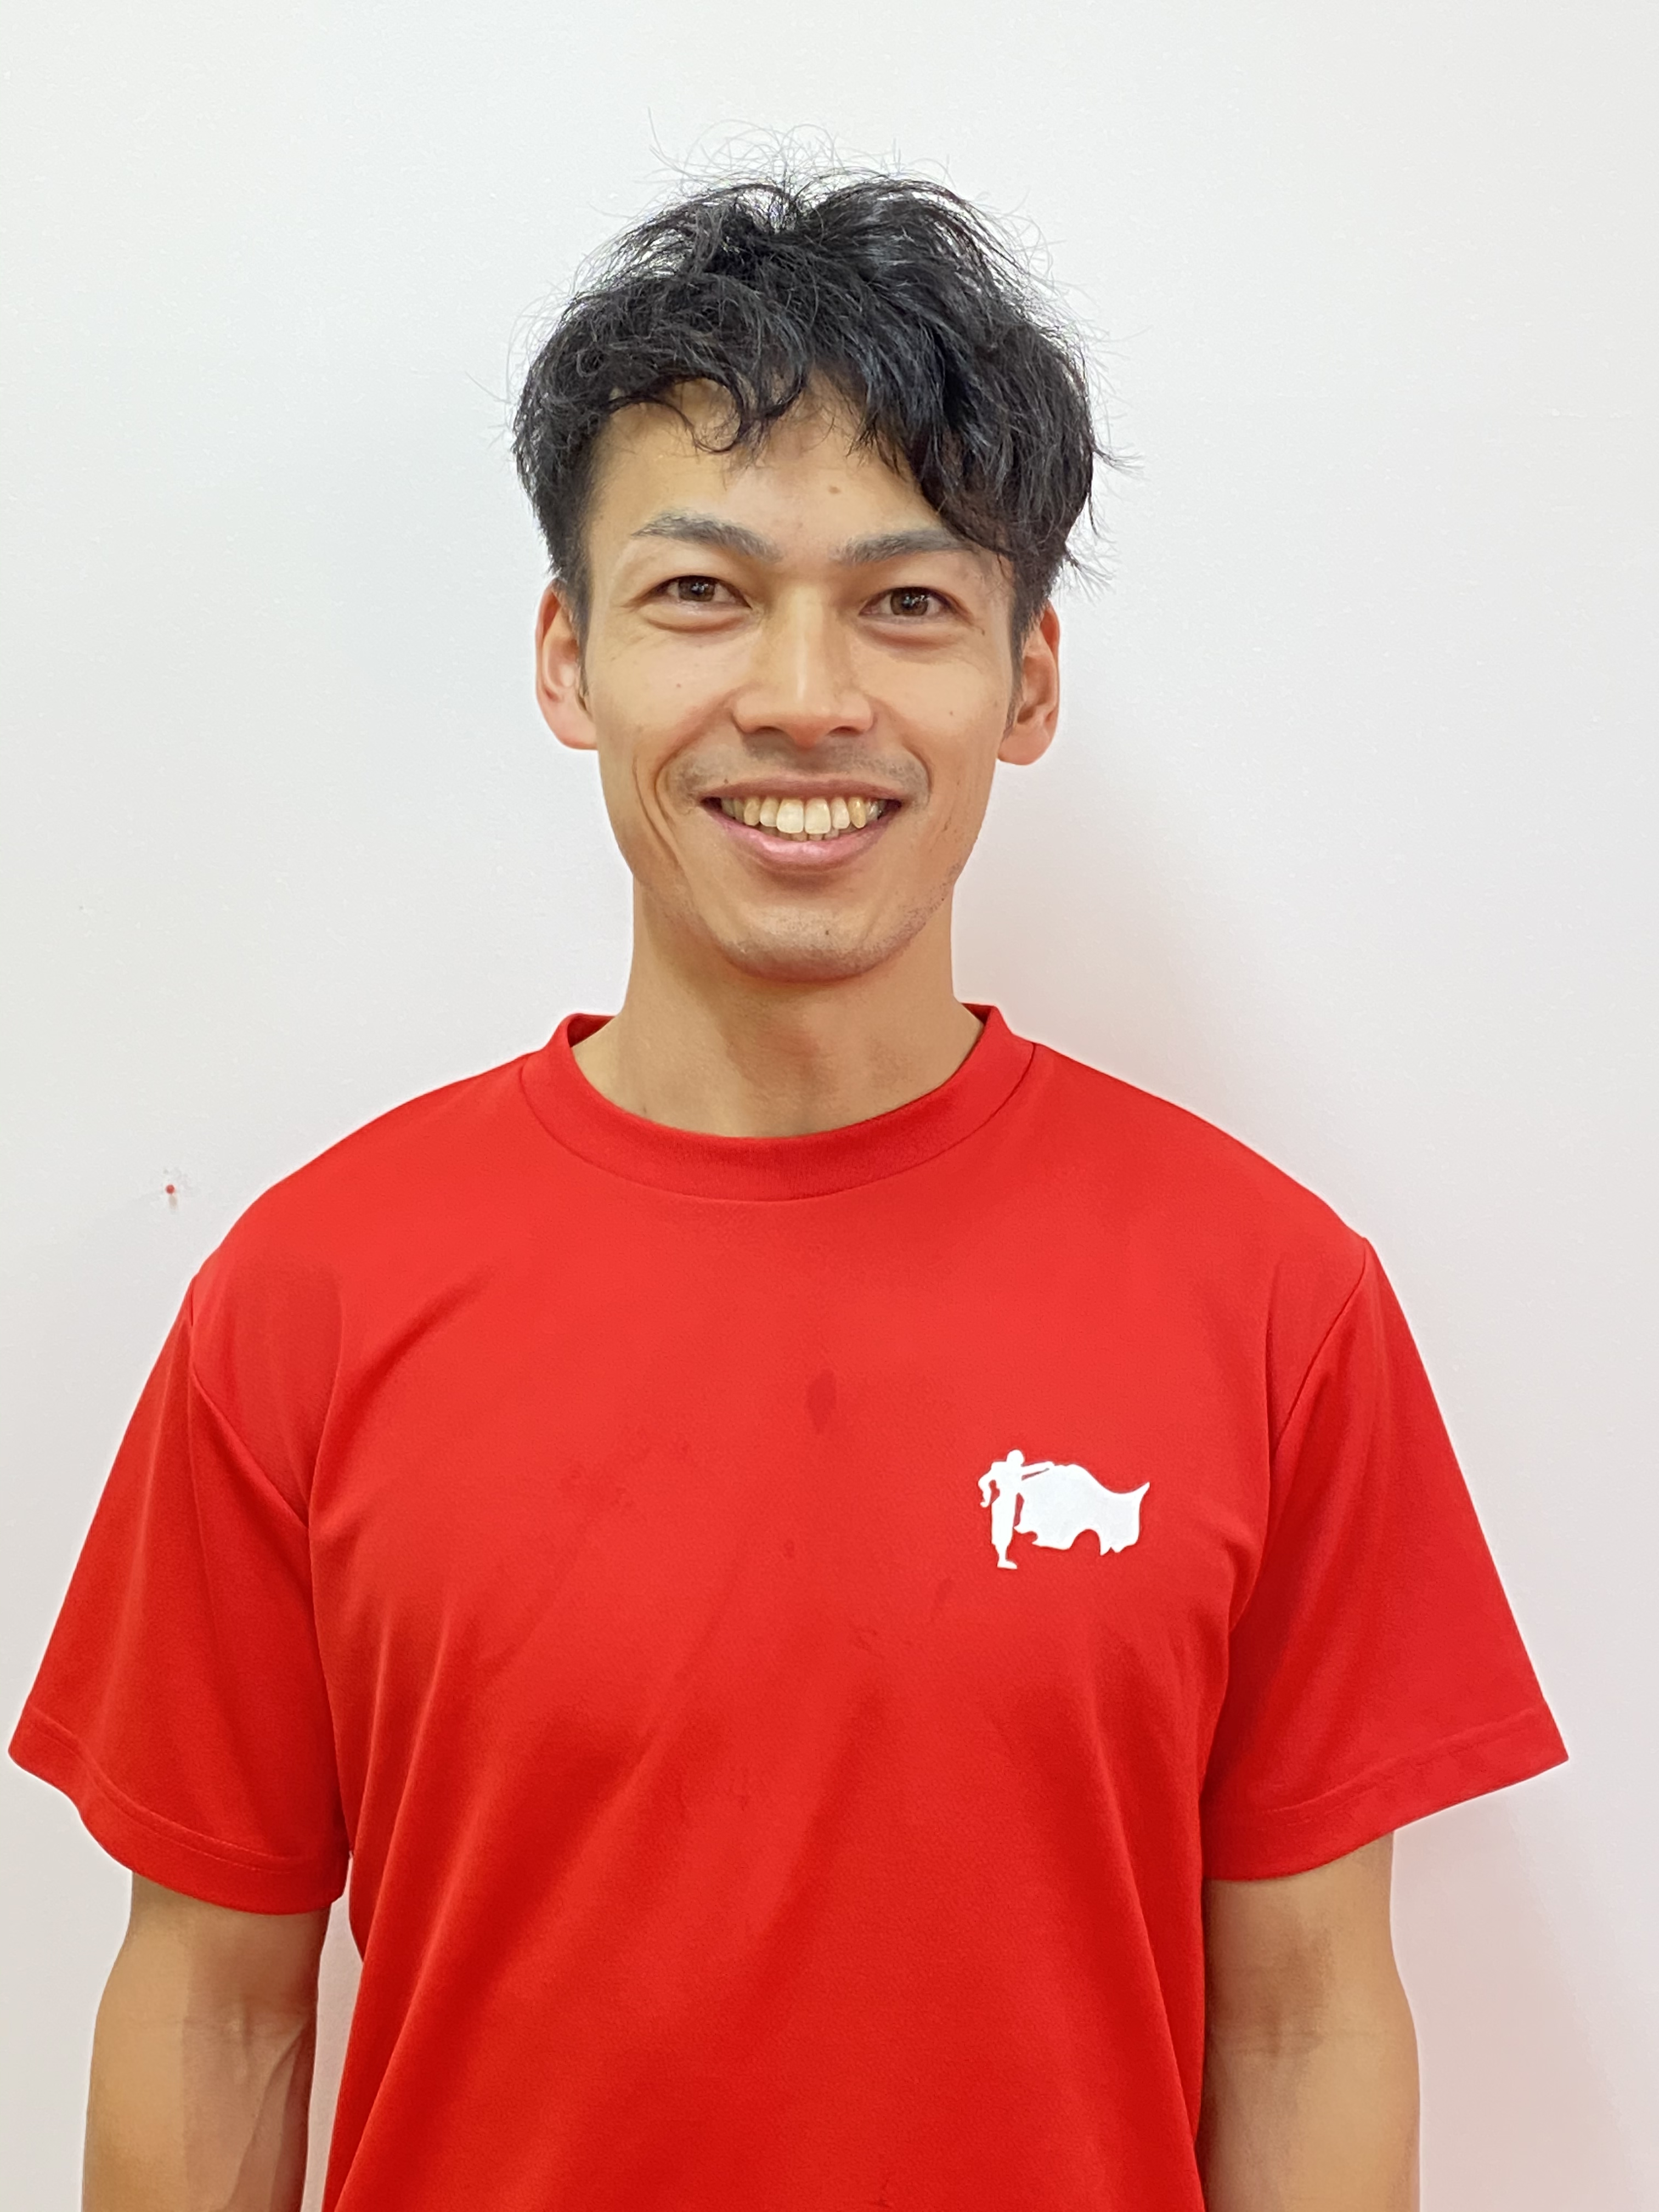 伊藤 大介 Ito Daisuke 名古屋 東京で実績と信頼のパーソナルトレーニングジムマタドール